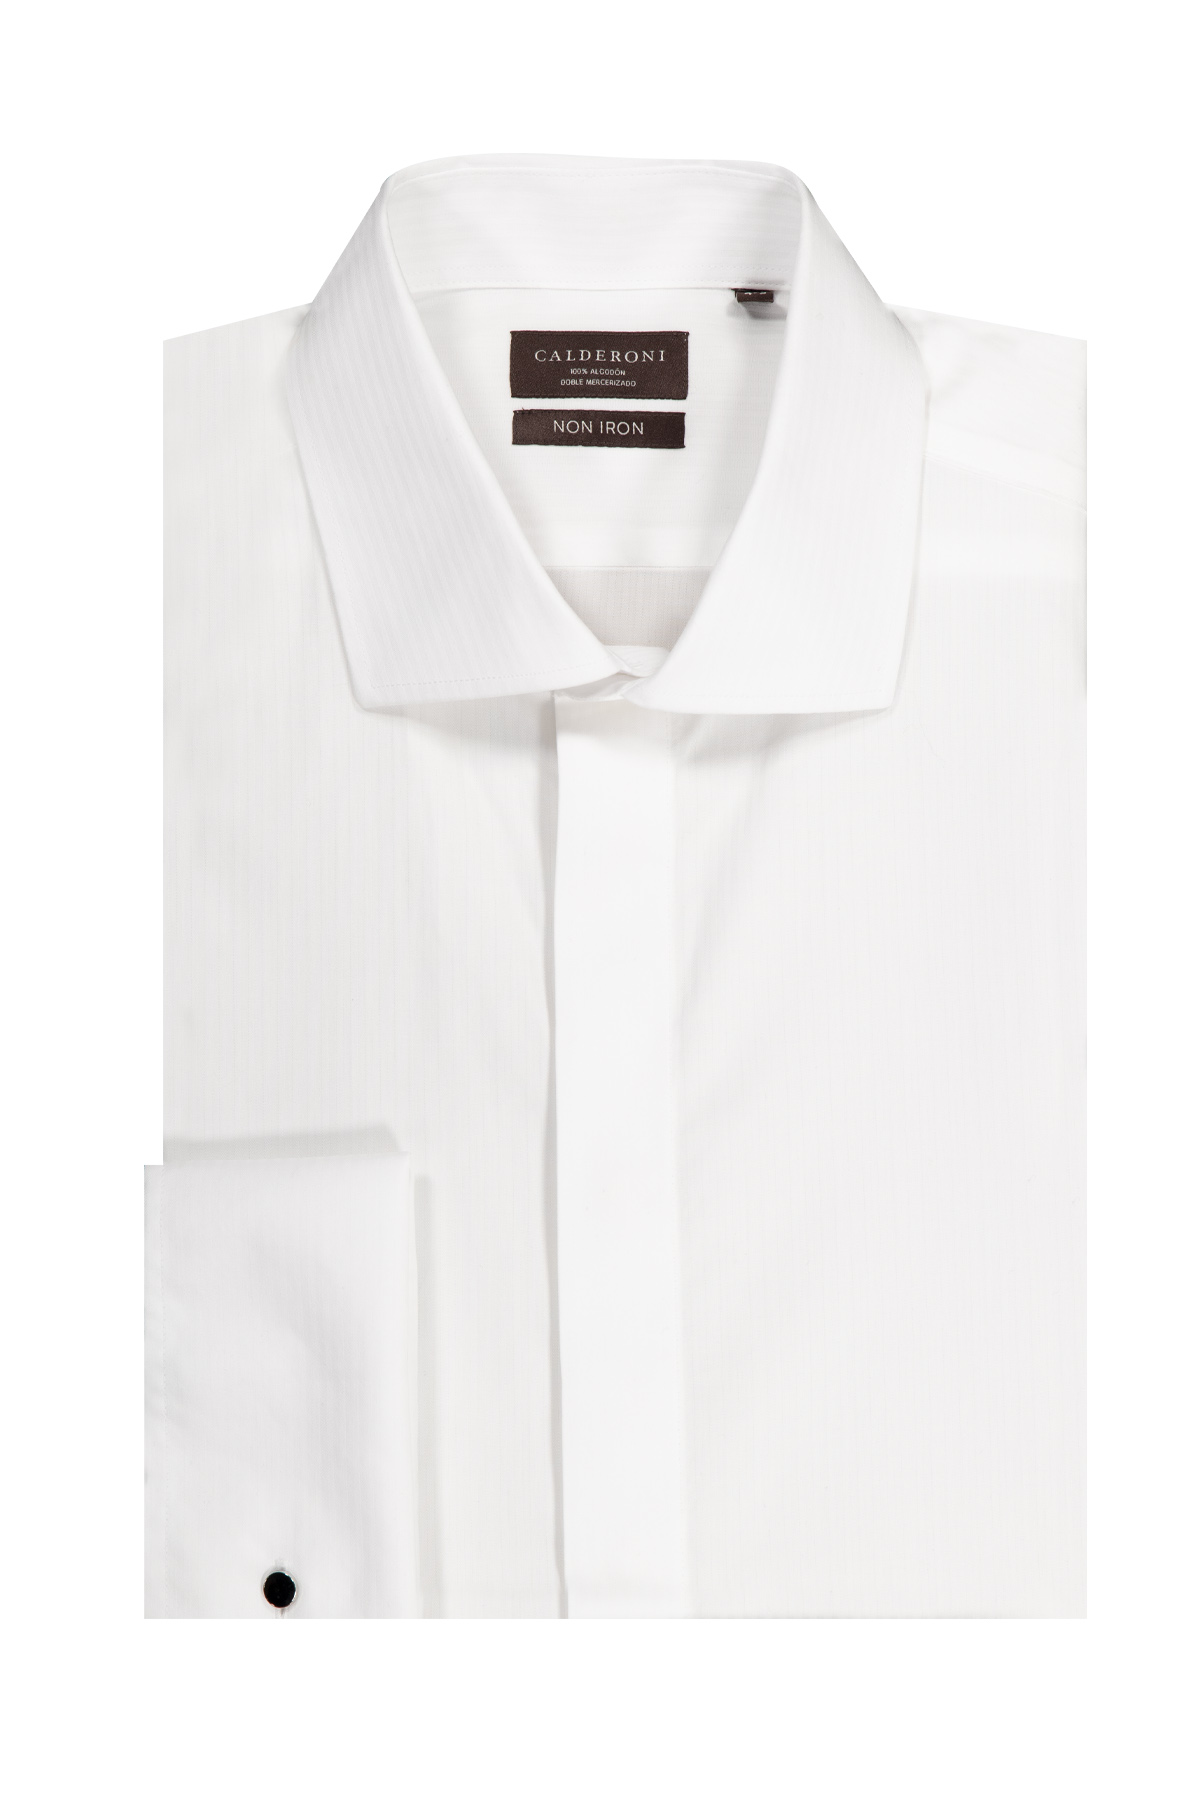 Camisa Vestir Calderoni Regular Fit Blanco